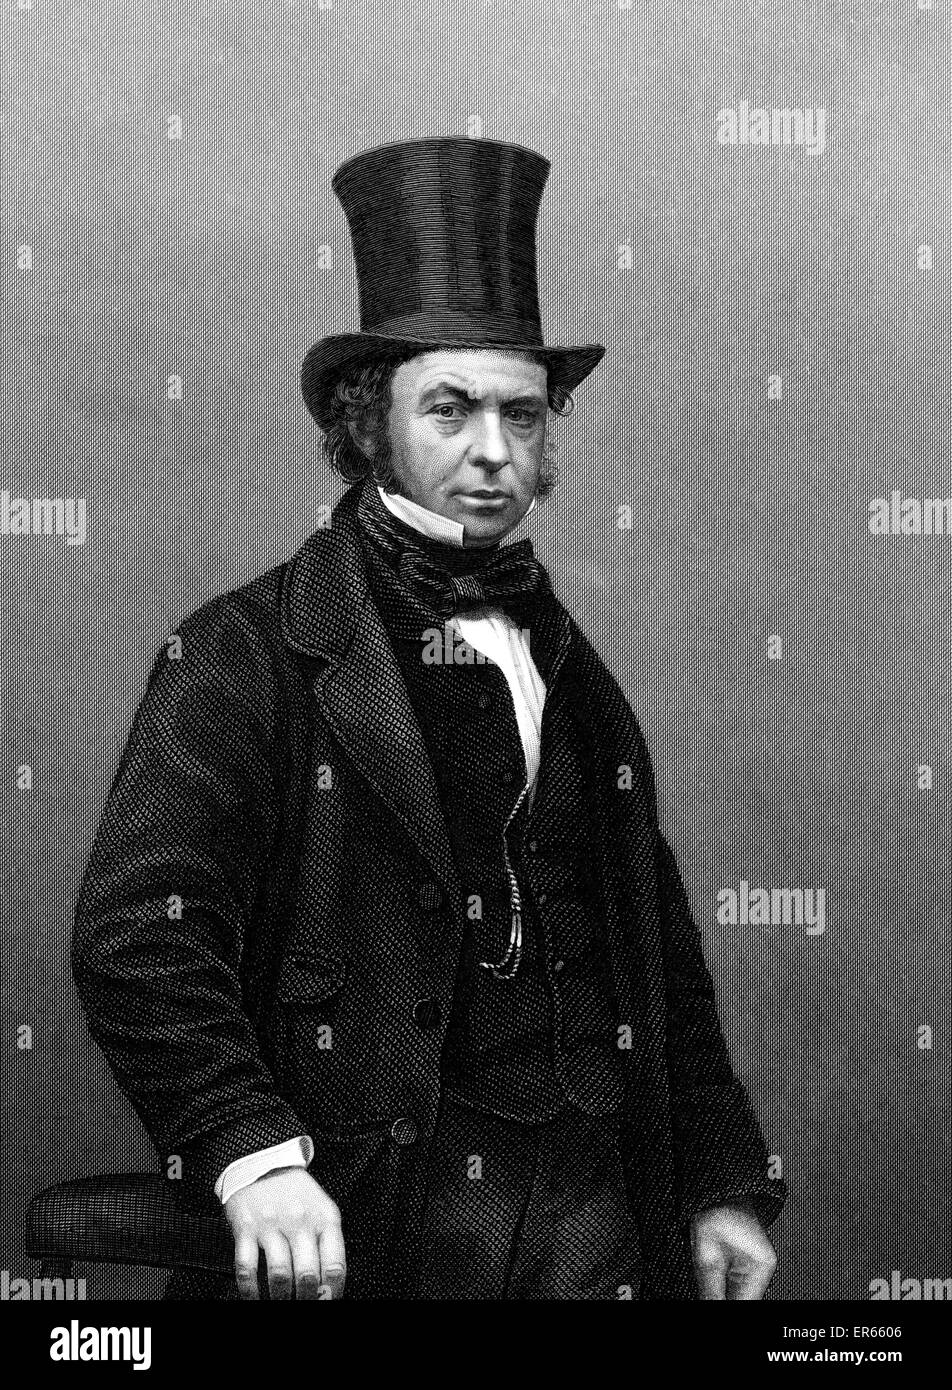 Isambard Kingdom Brunel (1806 15. September 1859) - englischer Maschinen- und Bauingenieur. Konstrukteur und Erbauer von Werften, die Great Western Railway, bahnbrechende Dampfschiffe (einschließlich The Great Eastern) und viele wichtige Brücken und Tunnel. ca. 1 Stockfoto